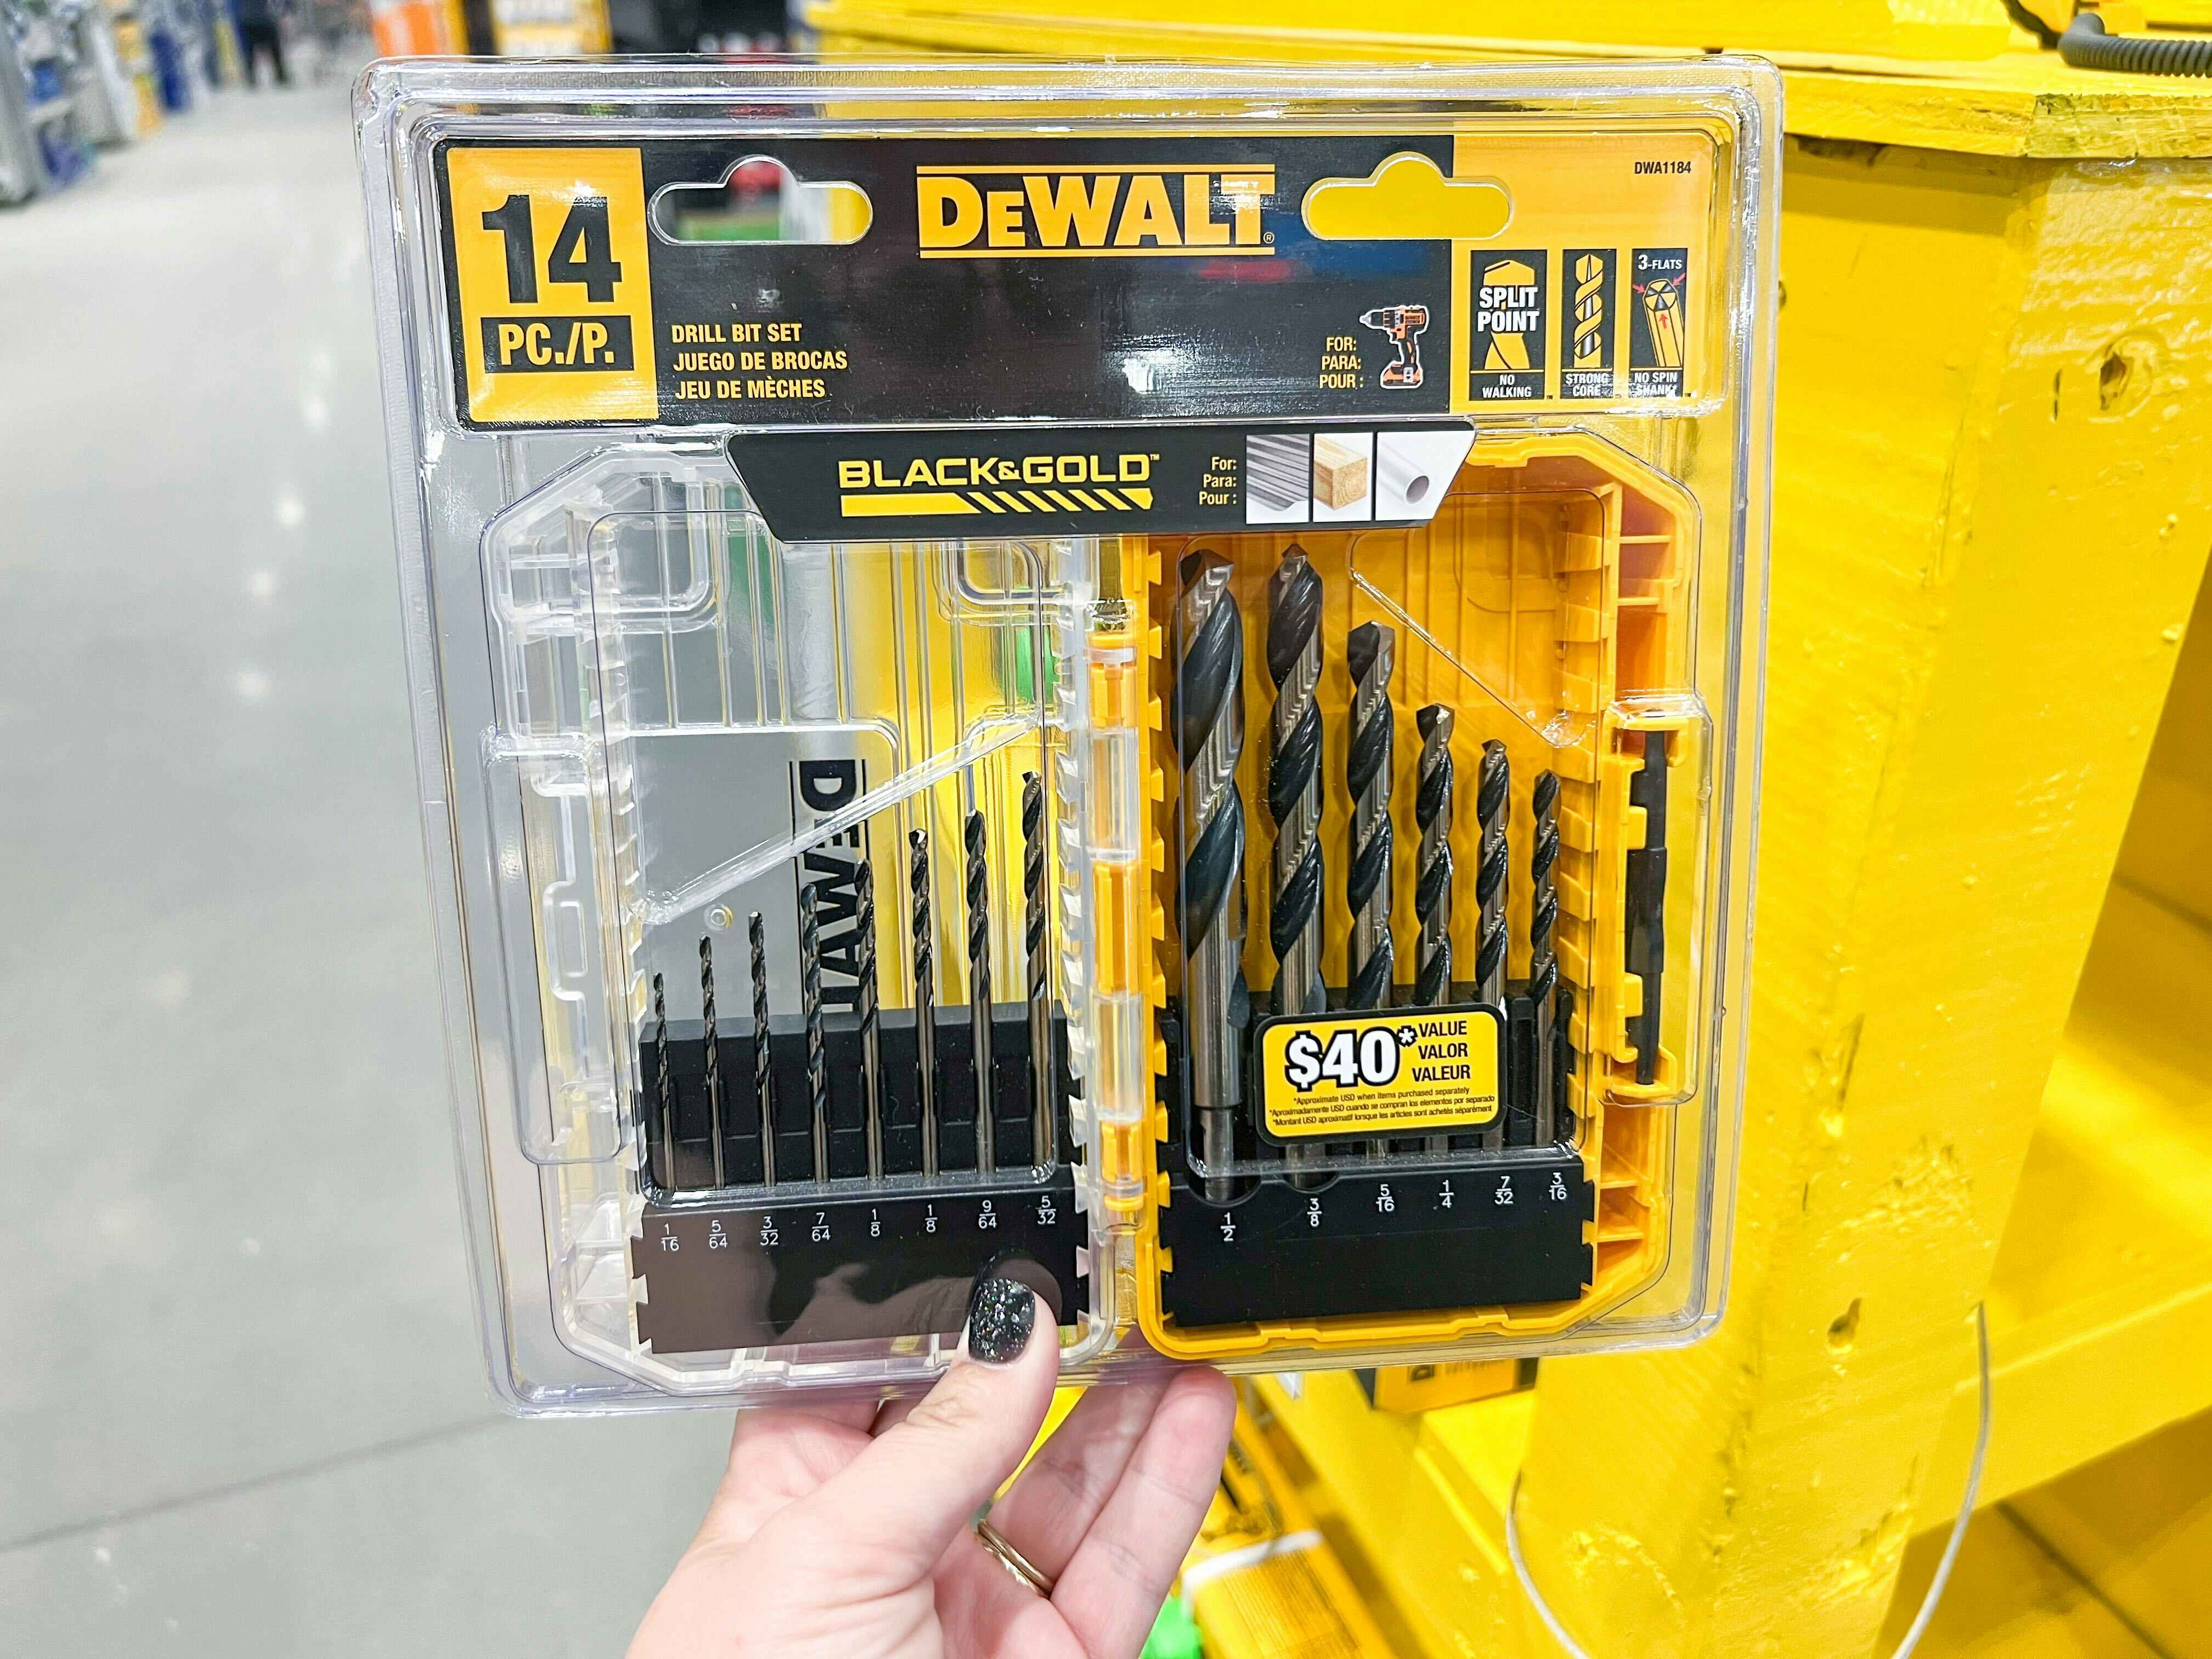 Dewalt 14-Piece Drill Bit Set, Only $9.98 on Amazon